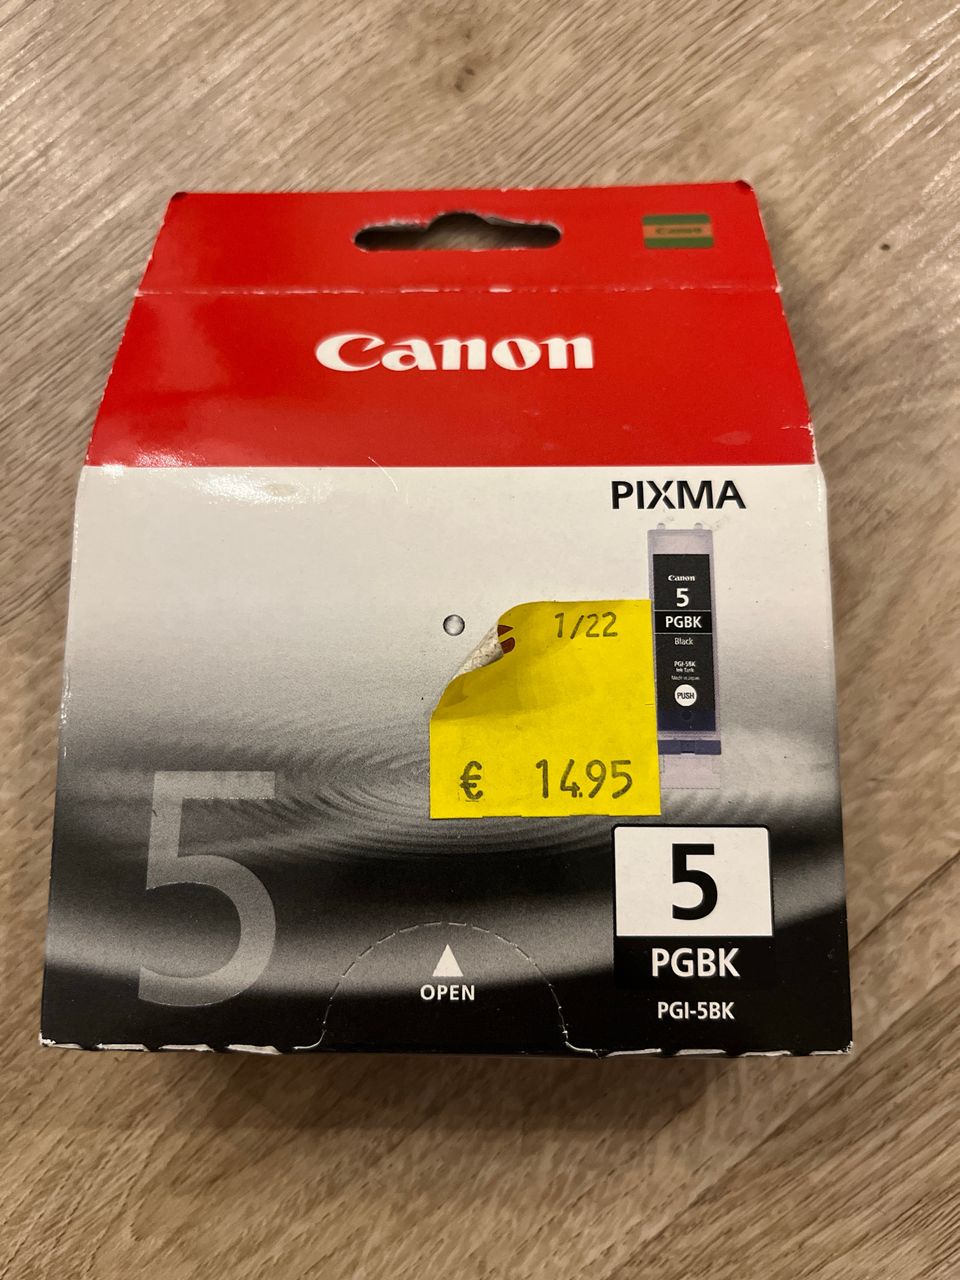 Canon pixma 6 PGBK